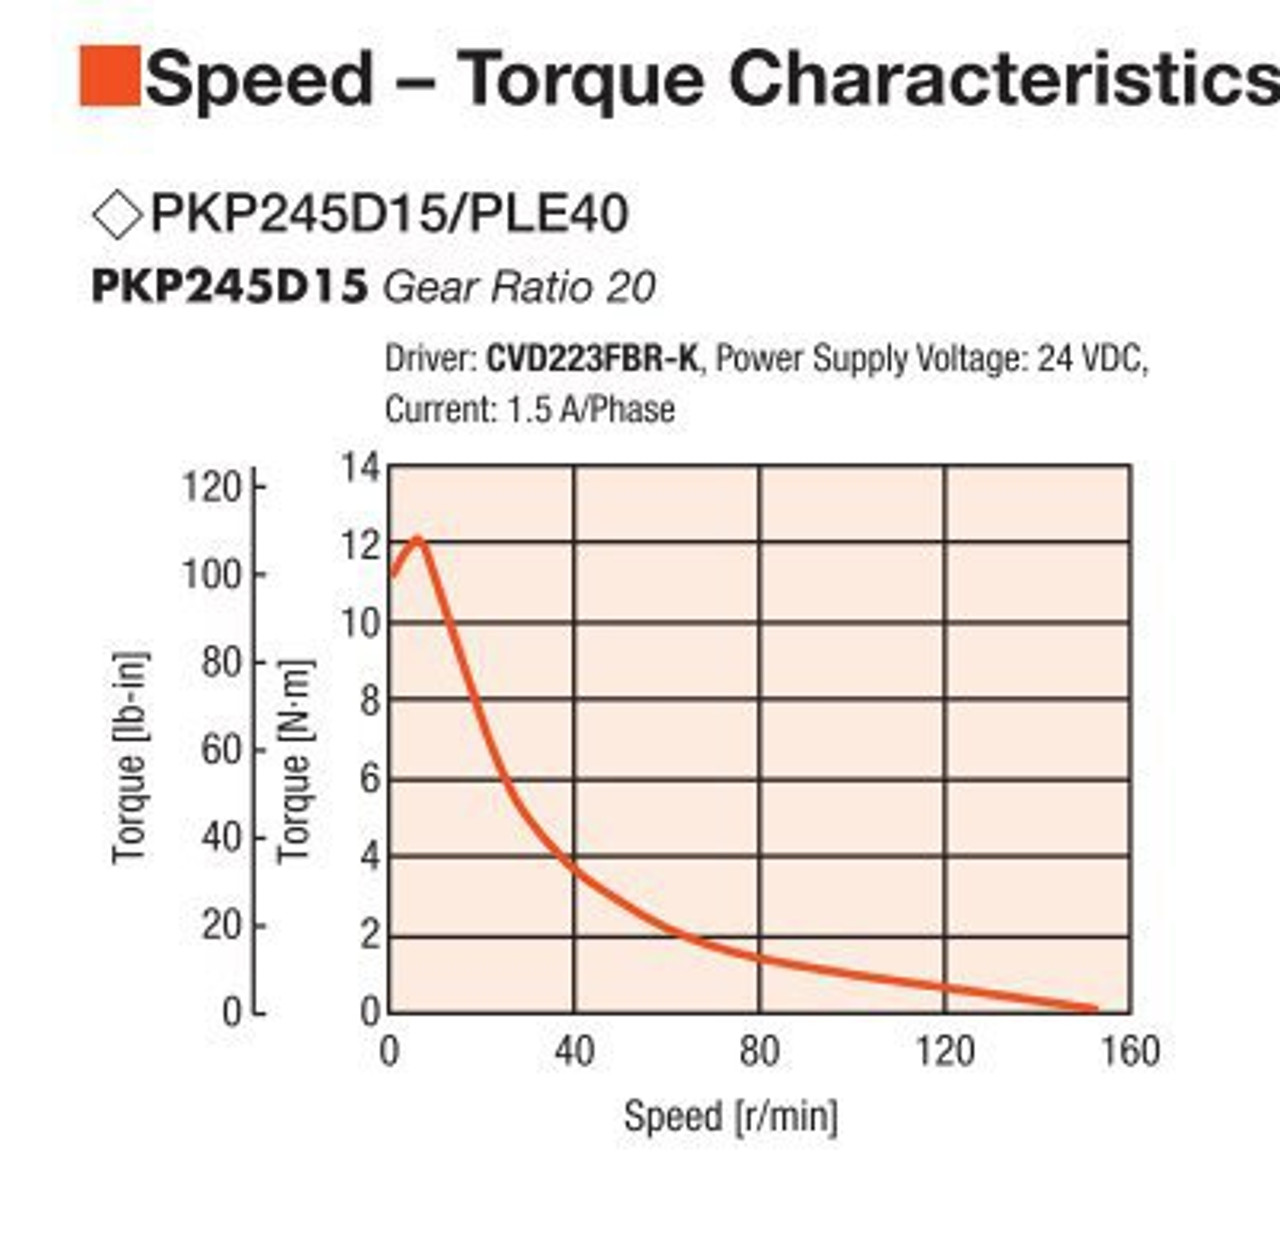 PKP245D15A2-R2E / PLE40-20B / P00027 - Speed-Torque